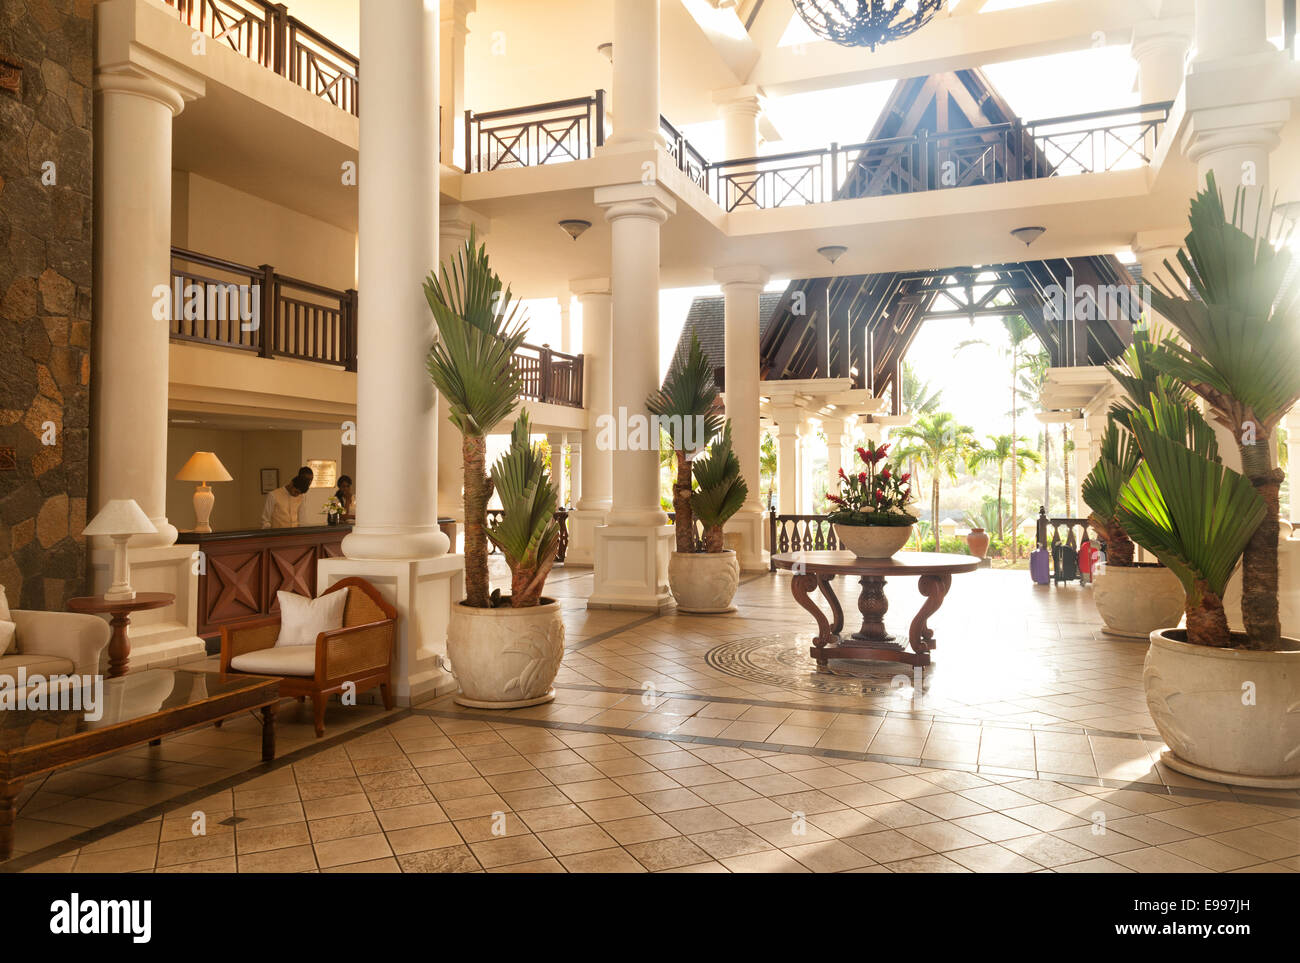 Le hall de l'hôtel résidence de luxe, Belle Mare, Ile Maurice, Afrique du Sud Banque D'Images